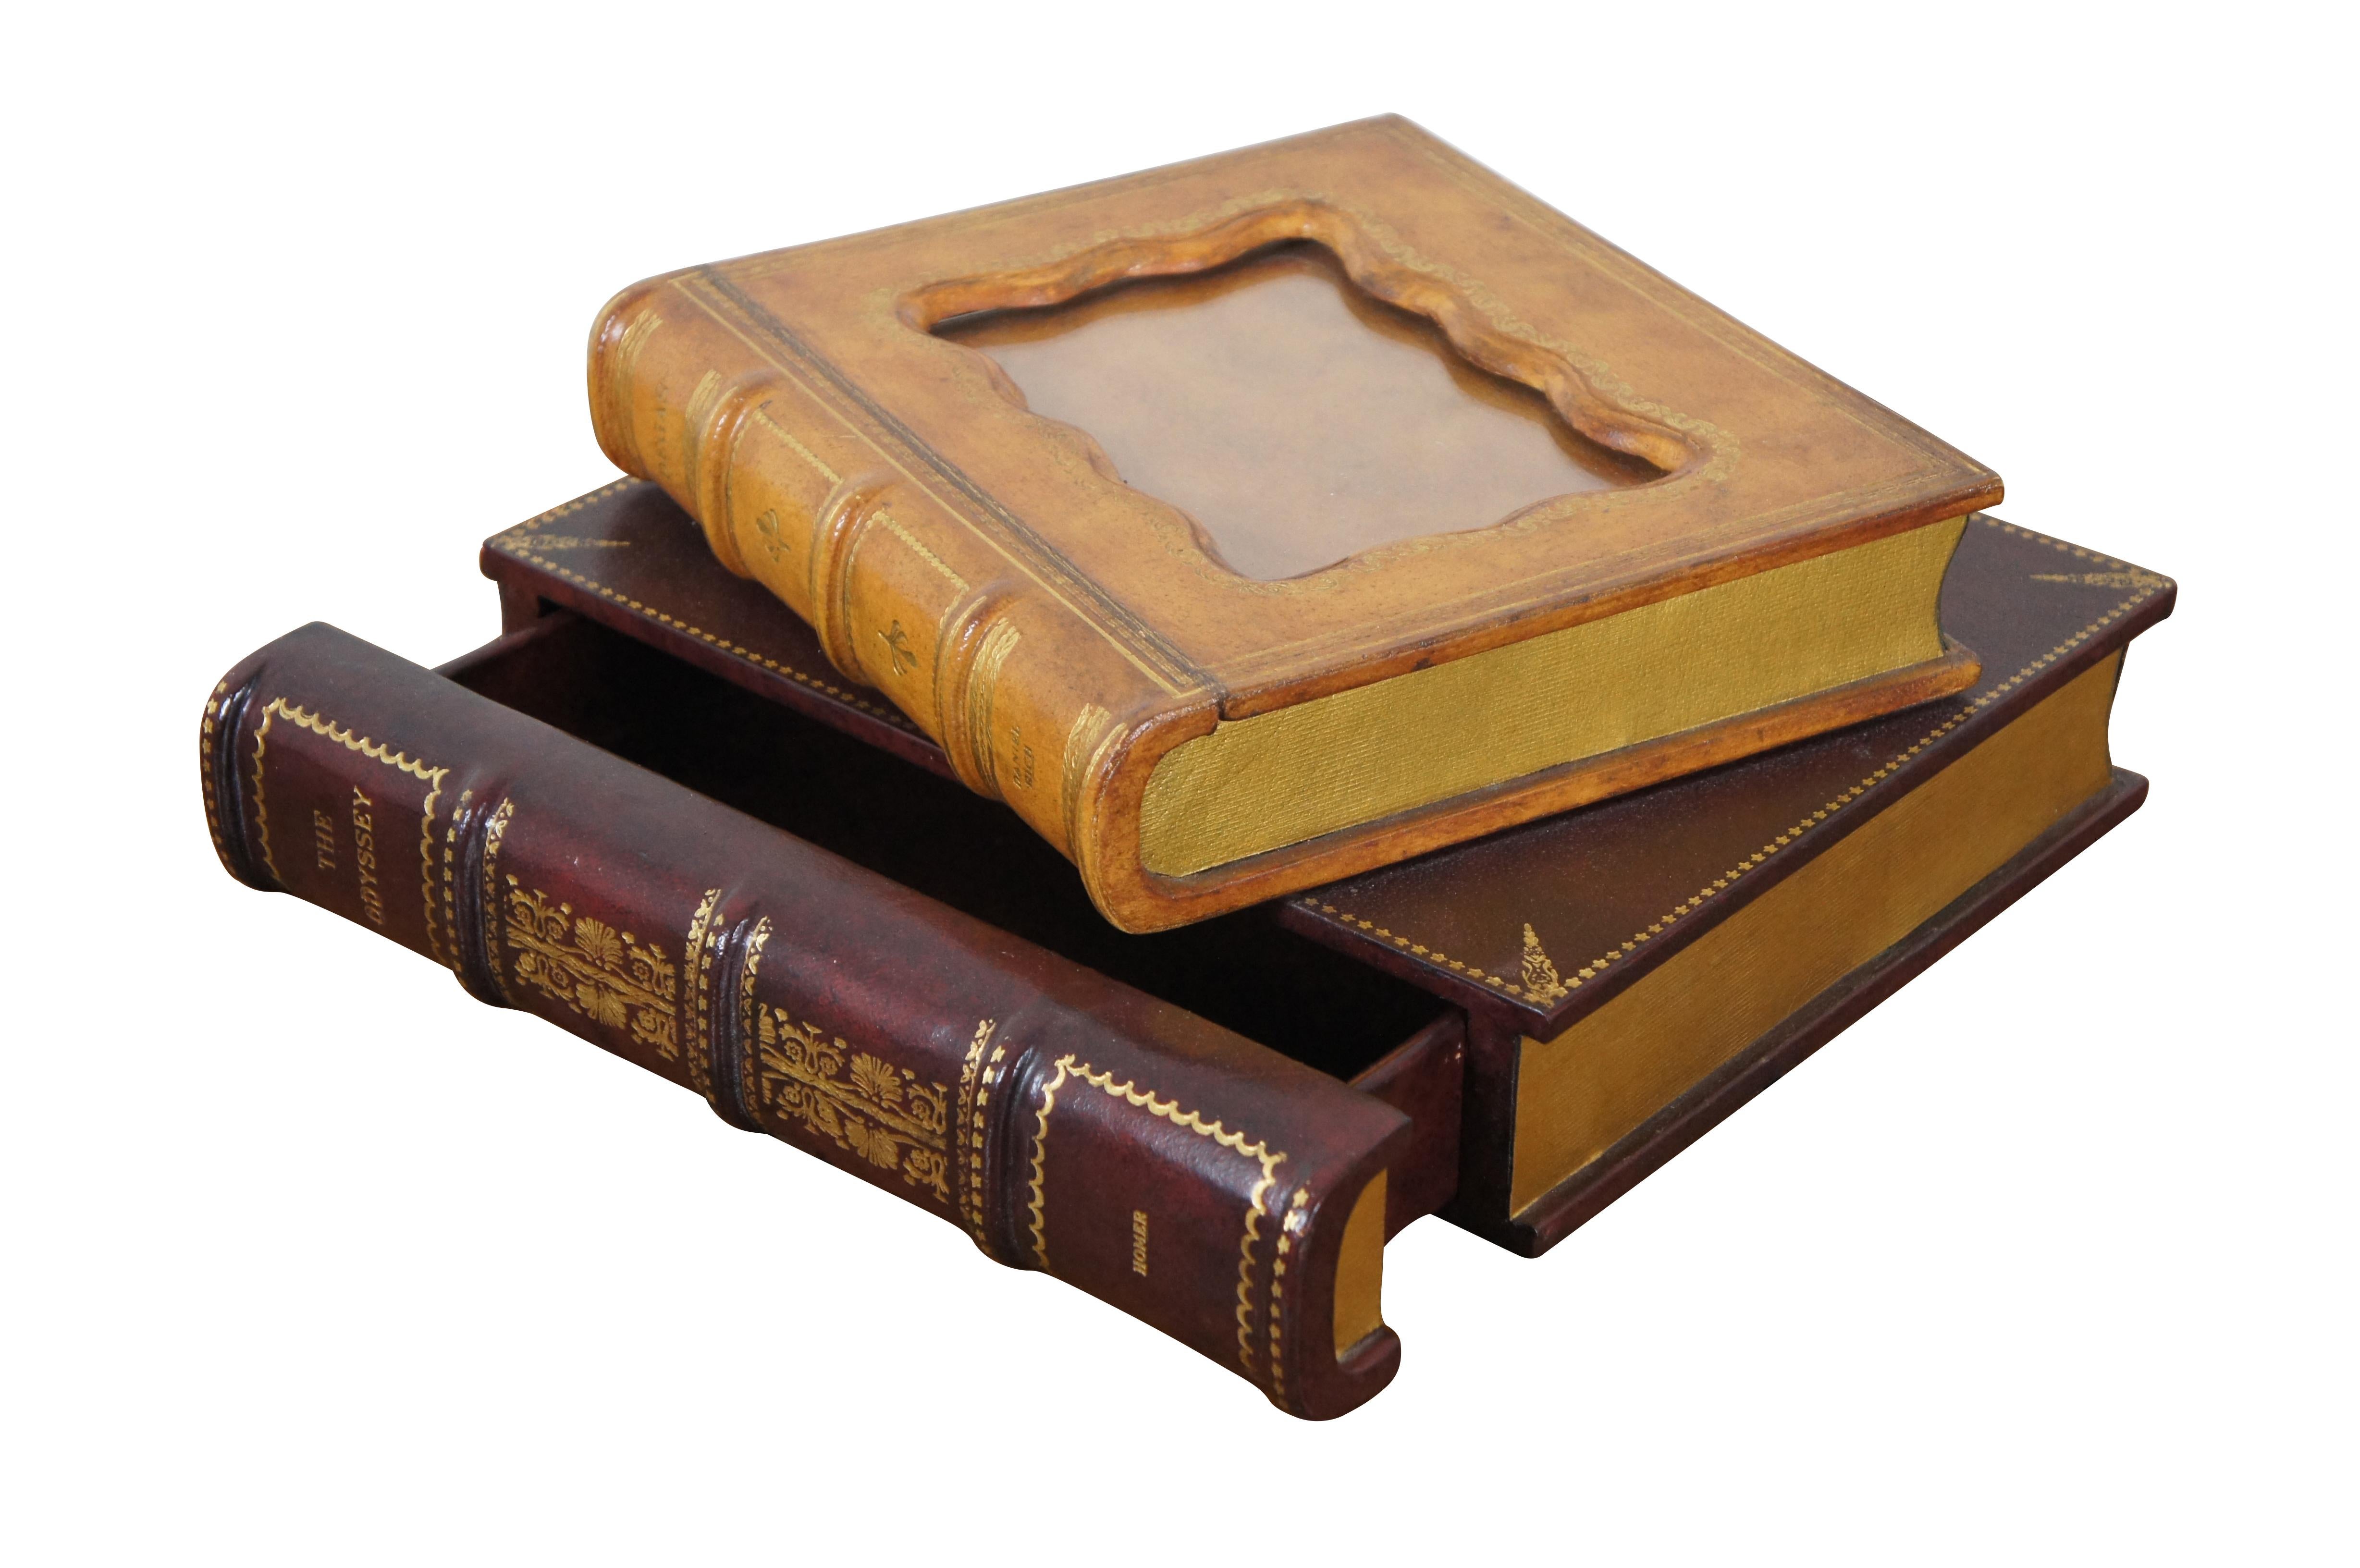 Vintage Maitland Smith Schmuckkästchen / Andenken / Schmuckkästchen / Schatulle in Form von zwei gestapelten ledergebundenen Büchern (Dega und Die Odyssee) mit vergoldeten Seiten. Der obere Teil lässt sich aufklappen und ist mit einem Bilderrahmen